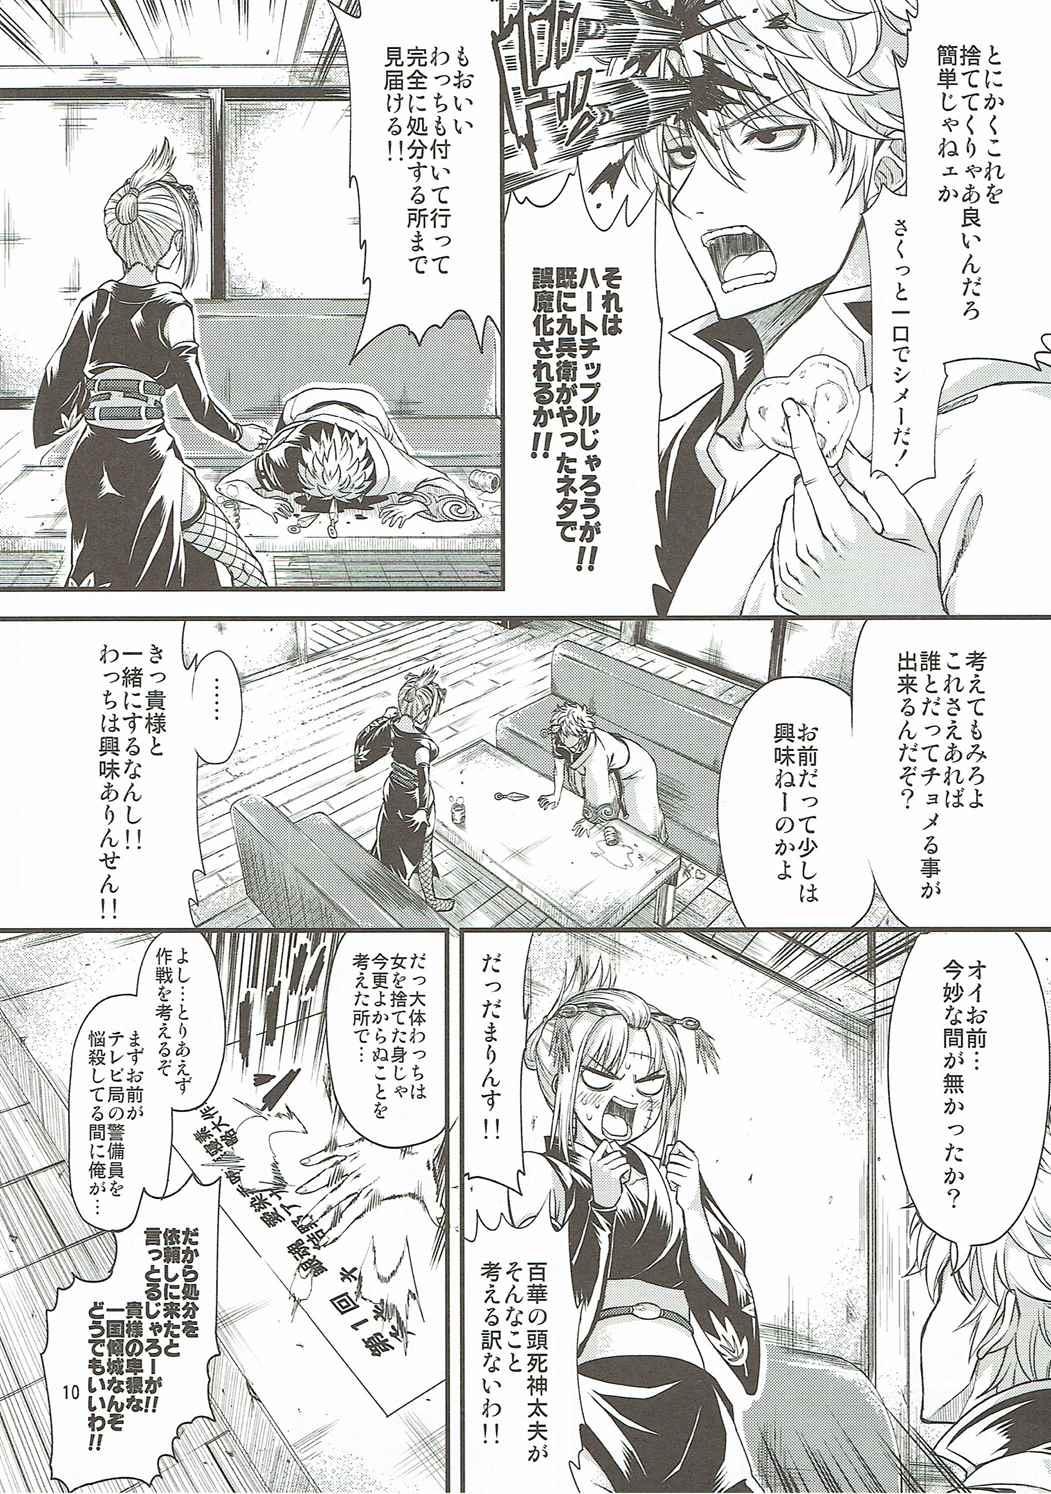 Exibicionismo Aizenkou Darkness - Gintama Friend - Page 9